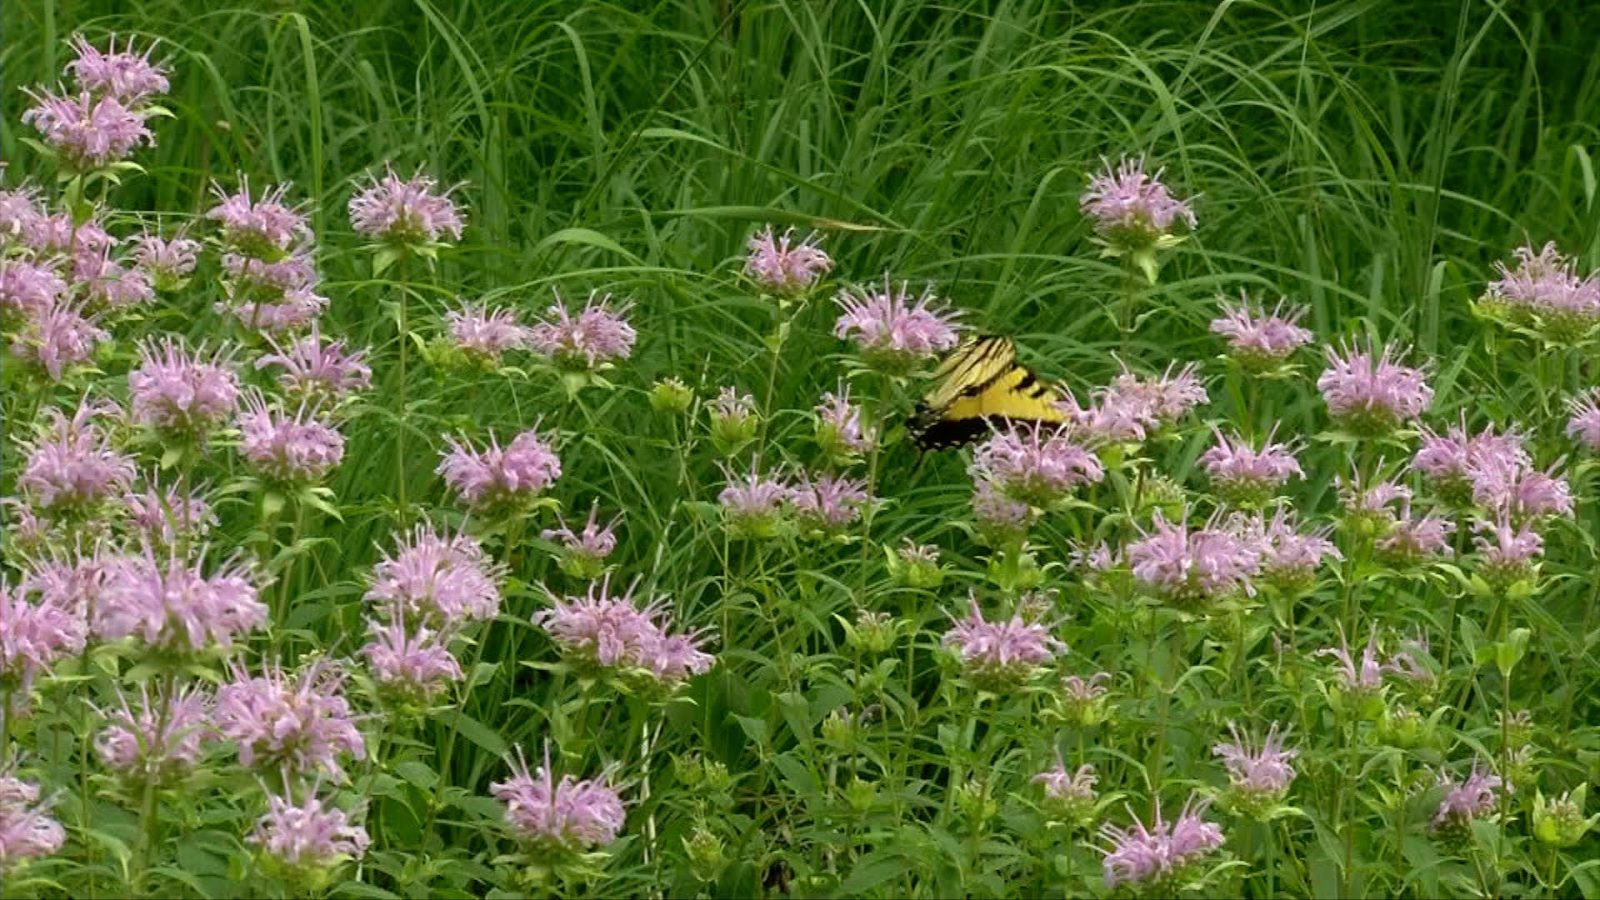 Butterfly in a field of flowers